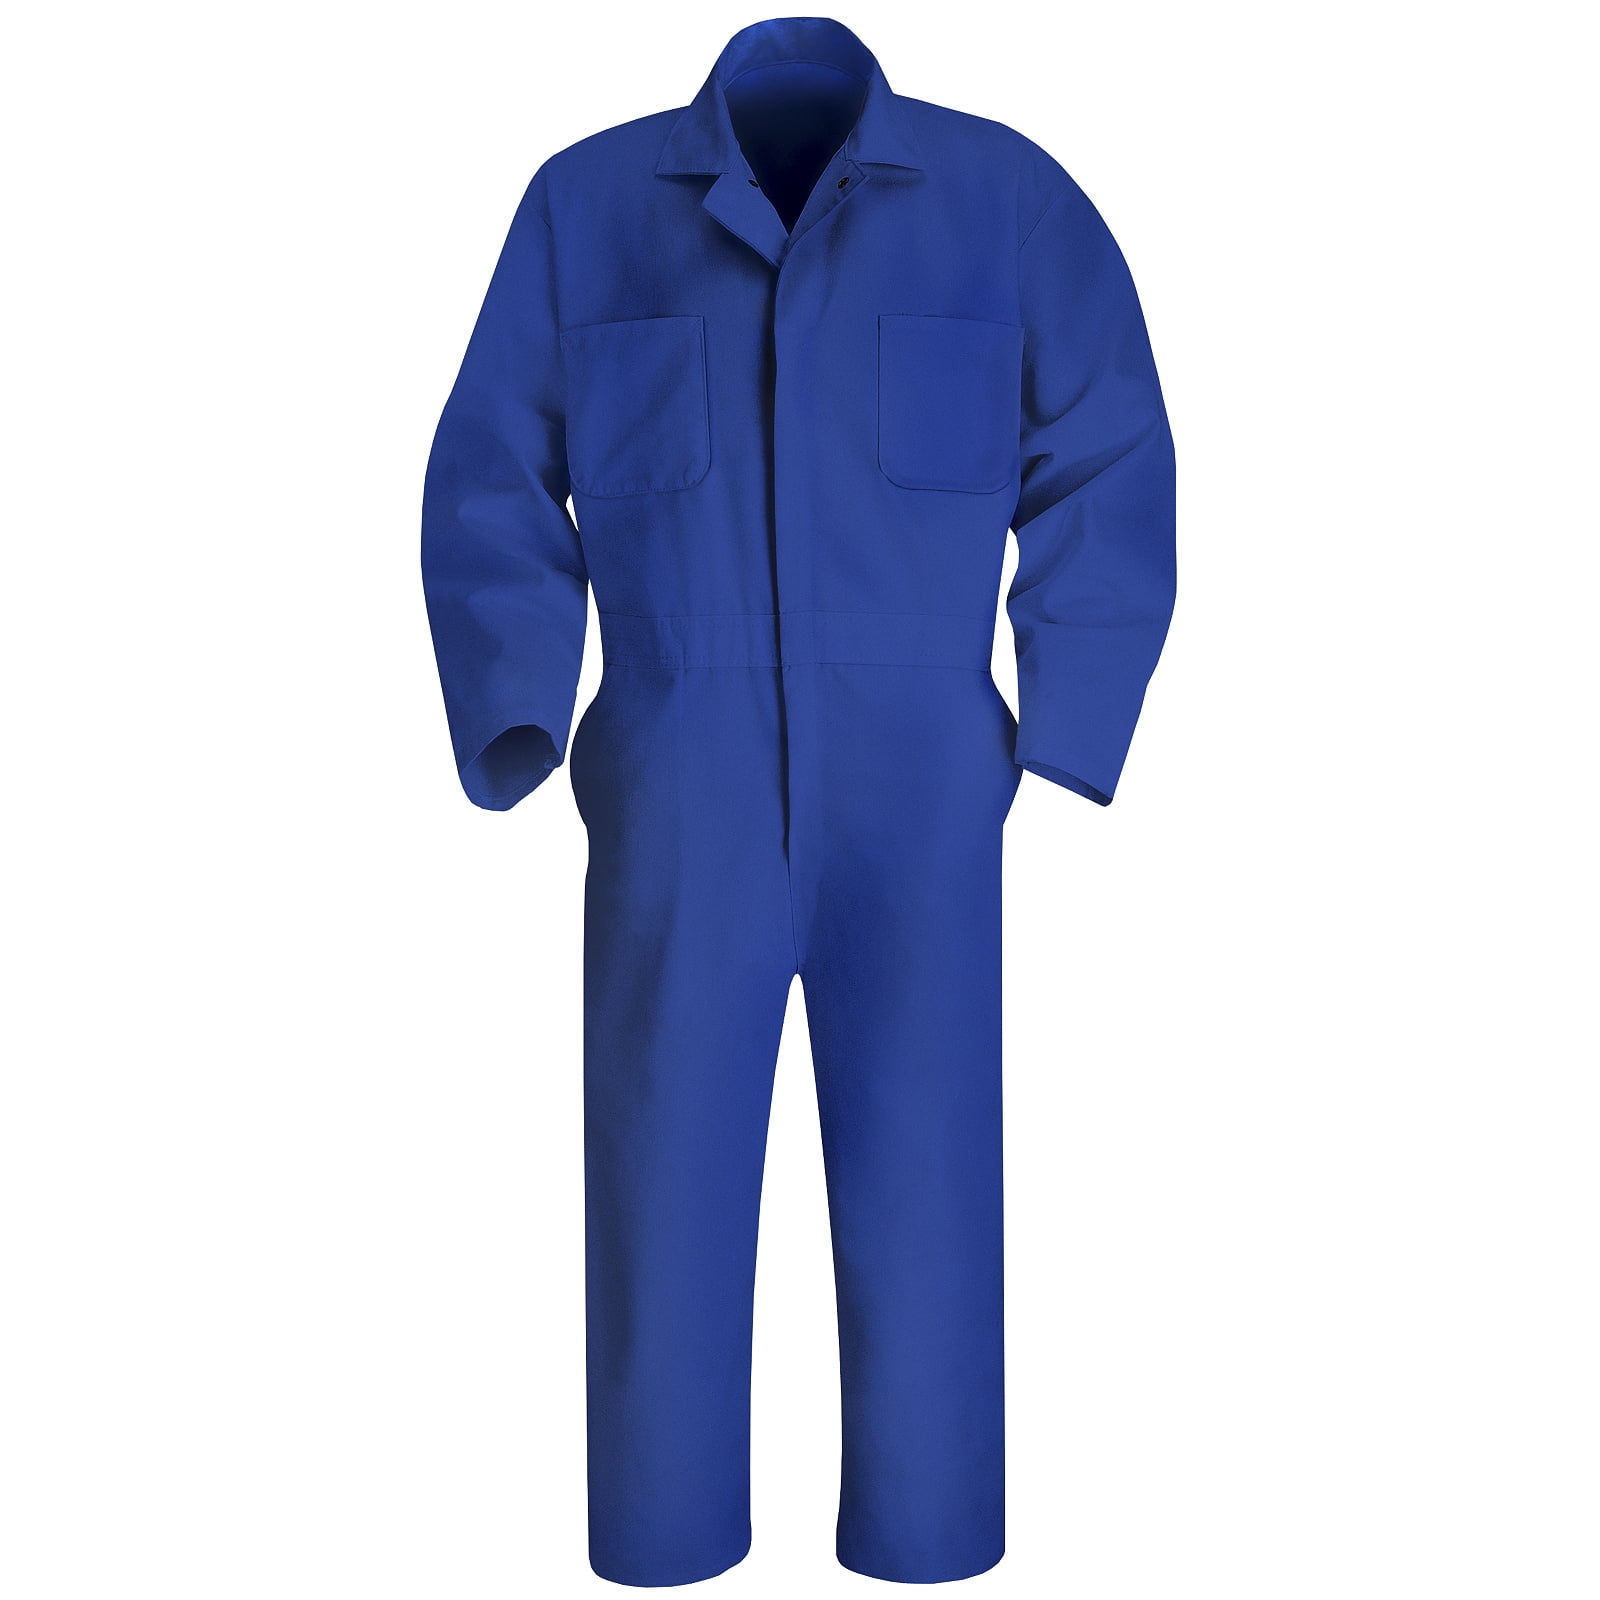 Navy blue Ladies or Mens or Kids boiler suit 